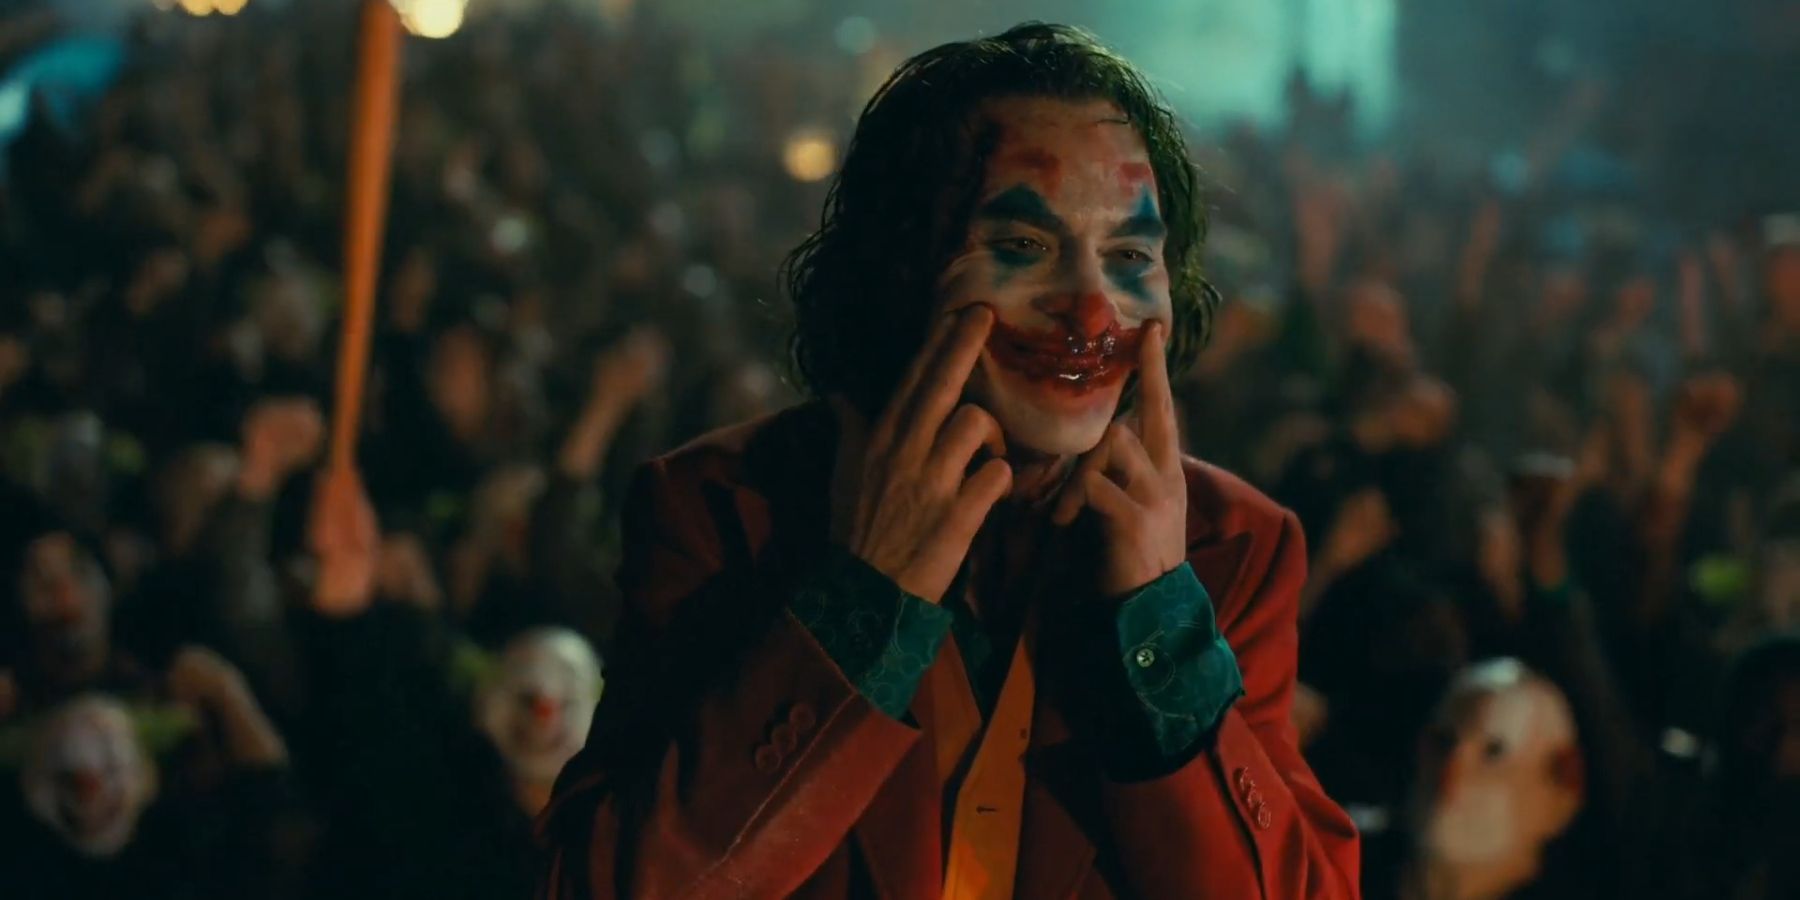 Arthur creating the blood smile in 2019's Joker